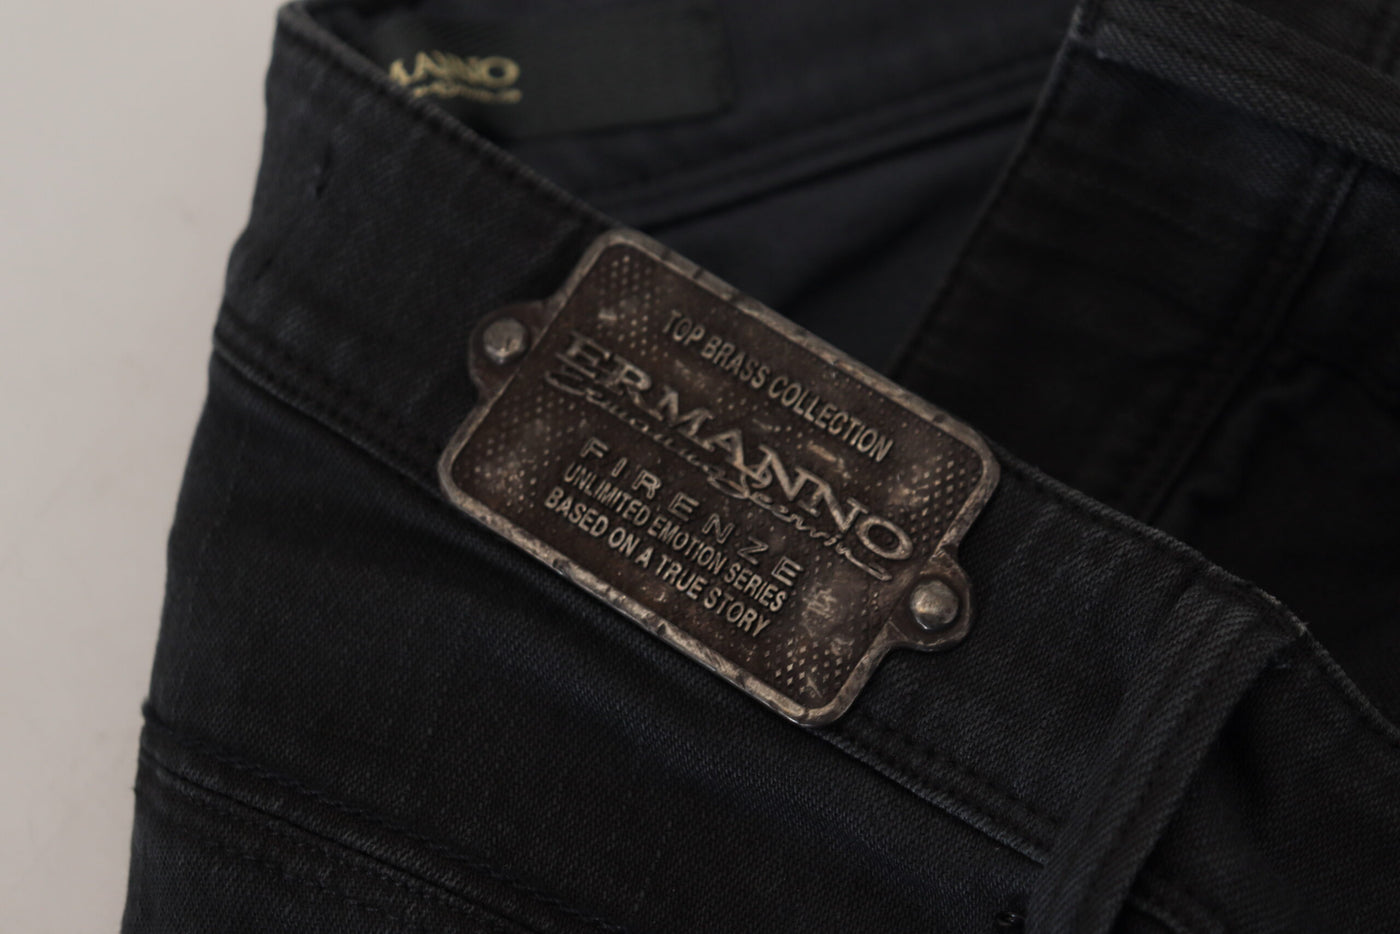 Black Cotton Slim Fit Women Denim Jeans